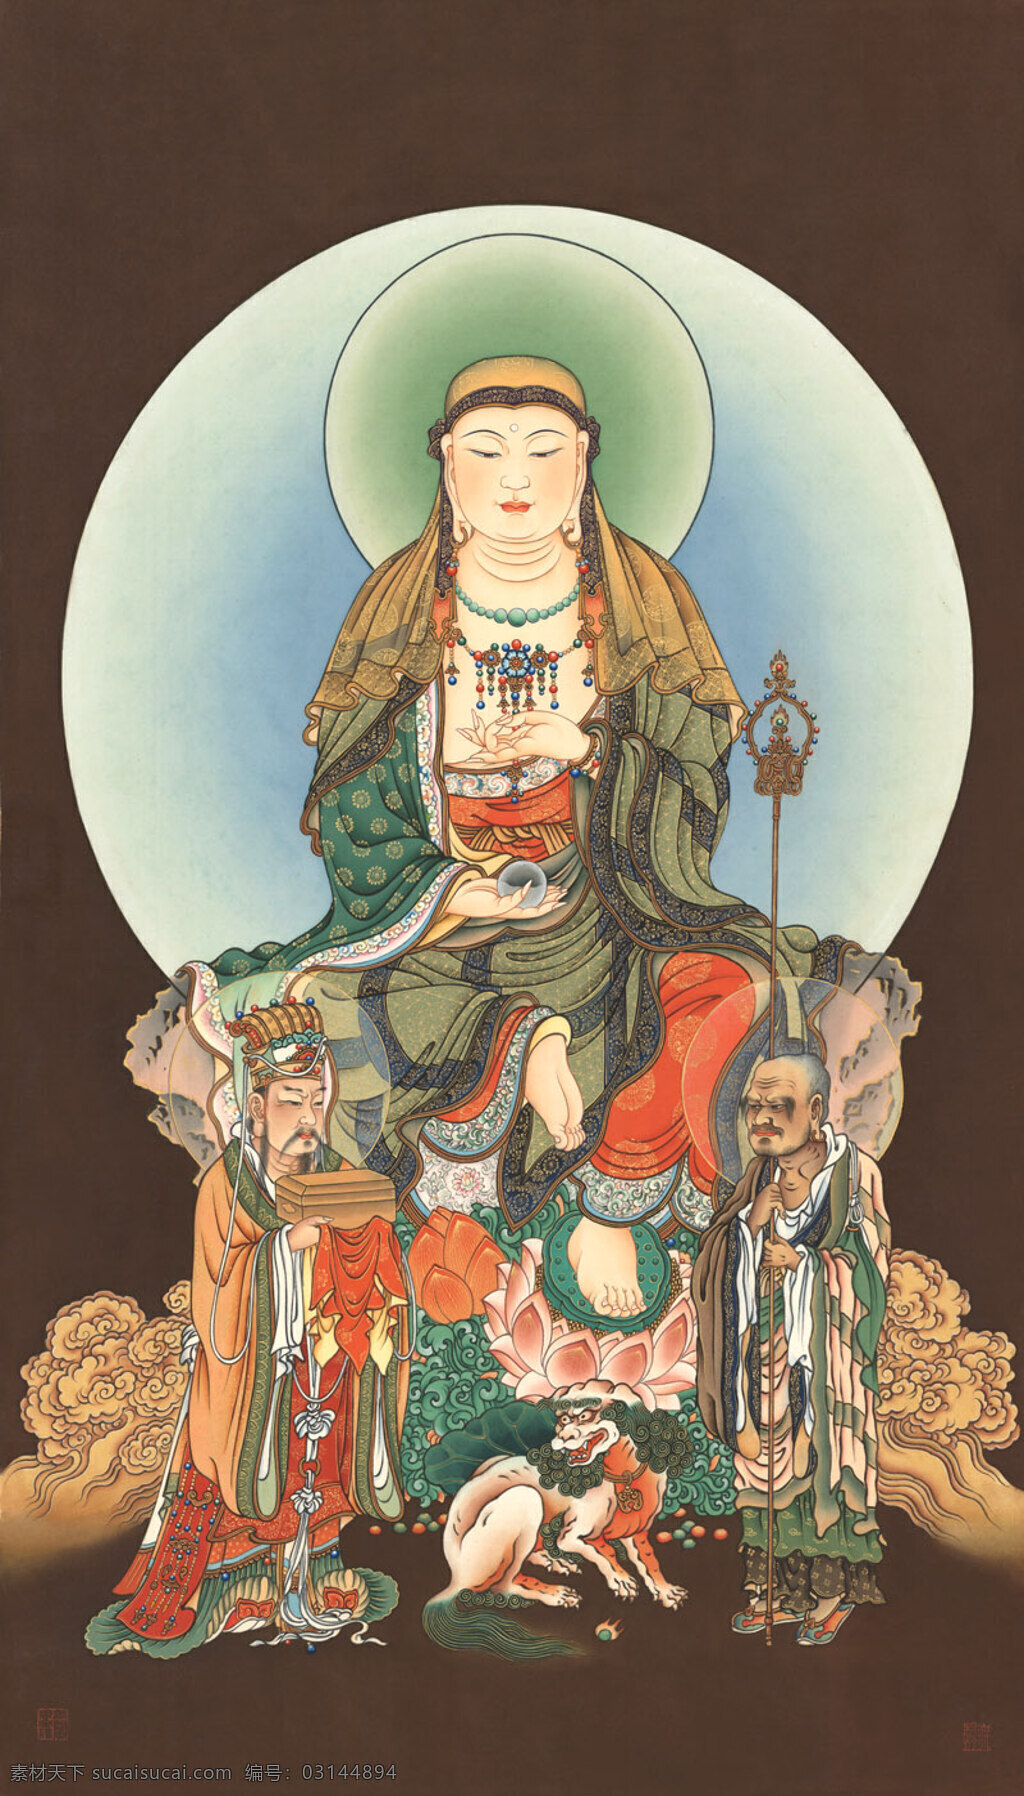 地藏王 菩萨 佛像 文化艺术 宗教信仰 地藏王菩萨 佛教圣像 地藏菩萨像